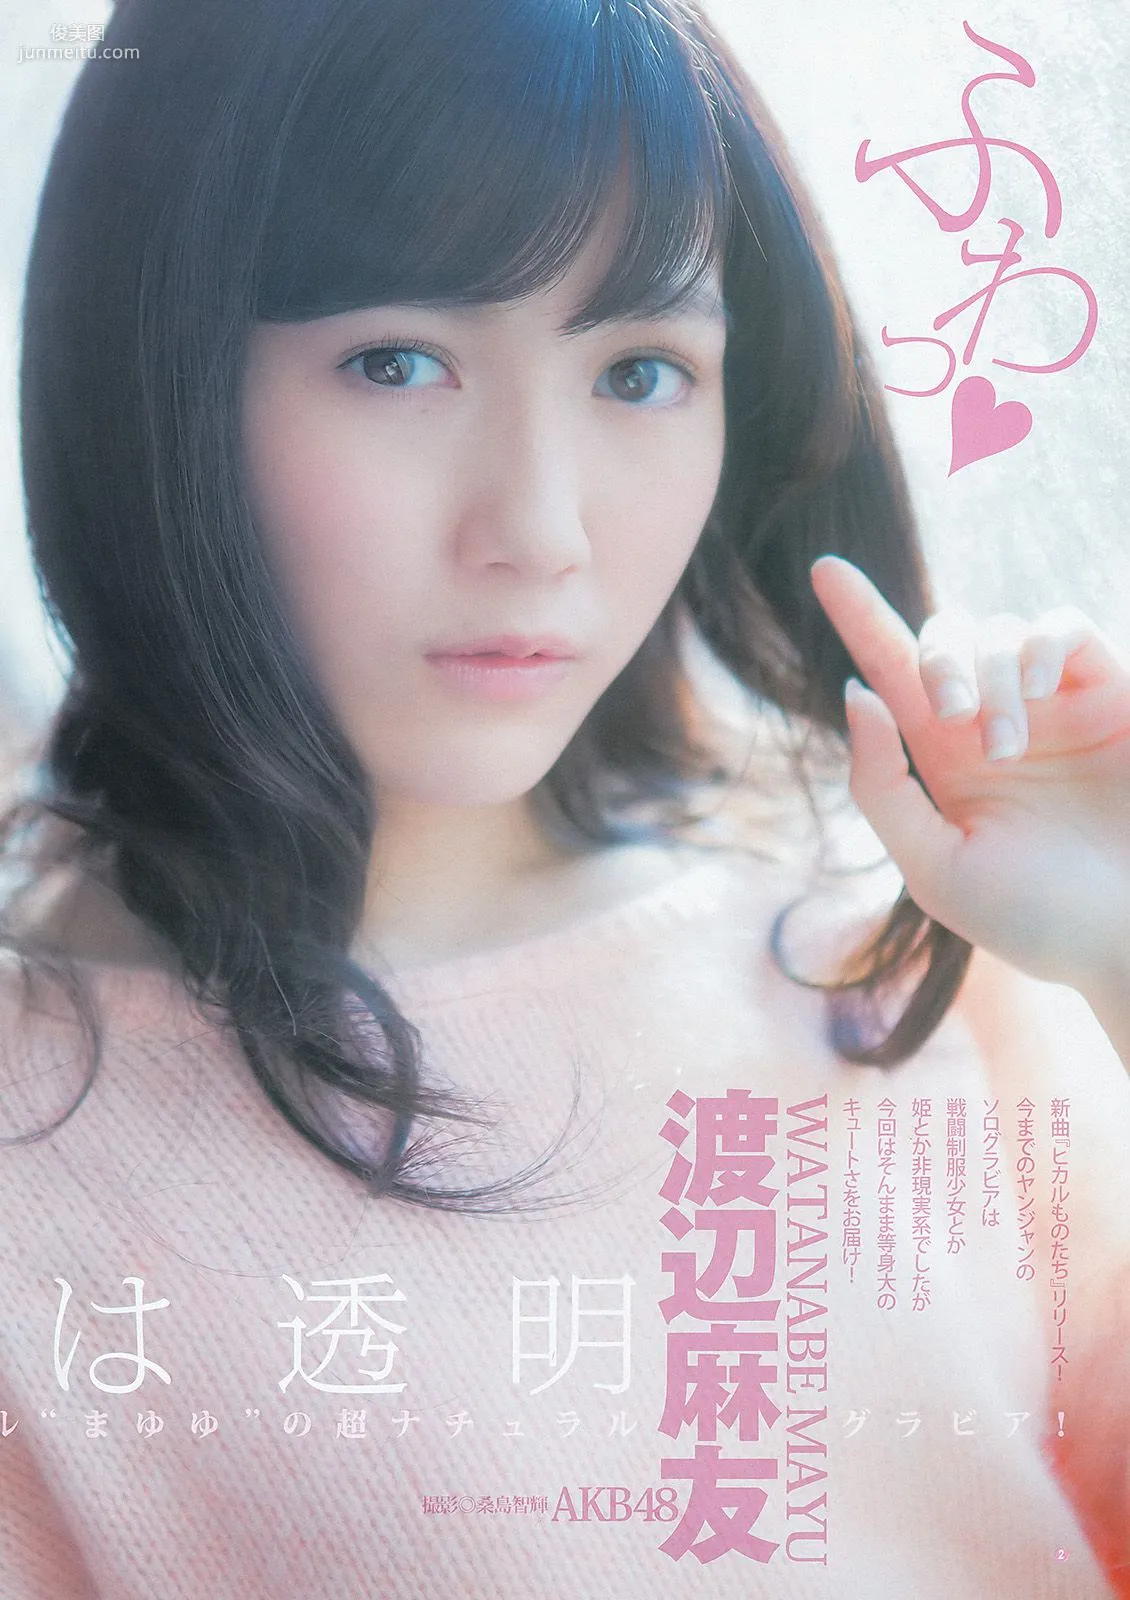 渡辺麻友 山本彩 [Weekly Young Jump] 2012年No.52 写真杂志3